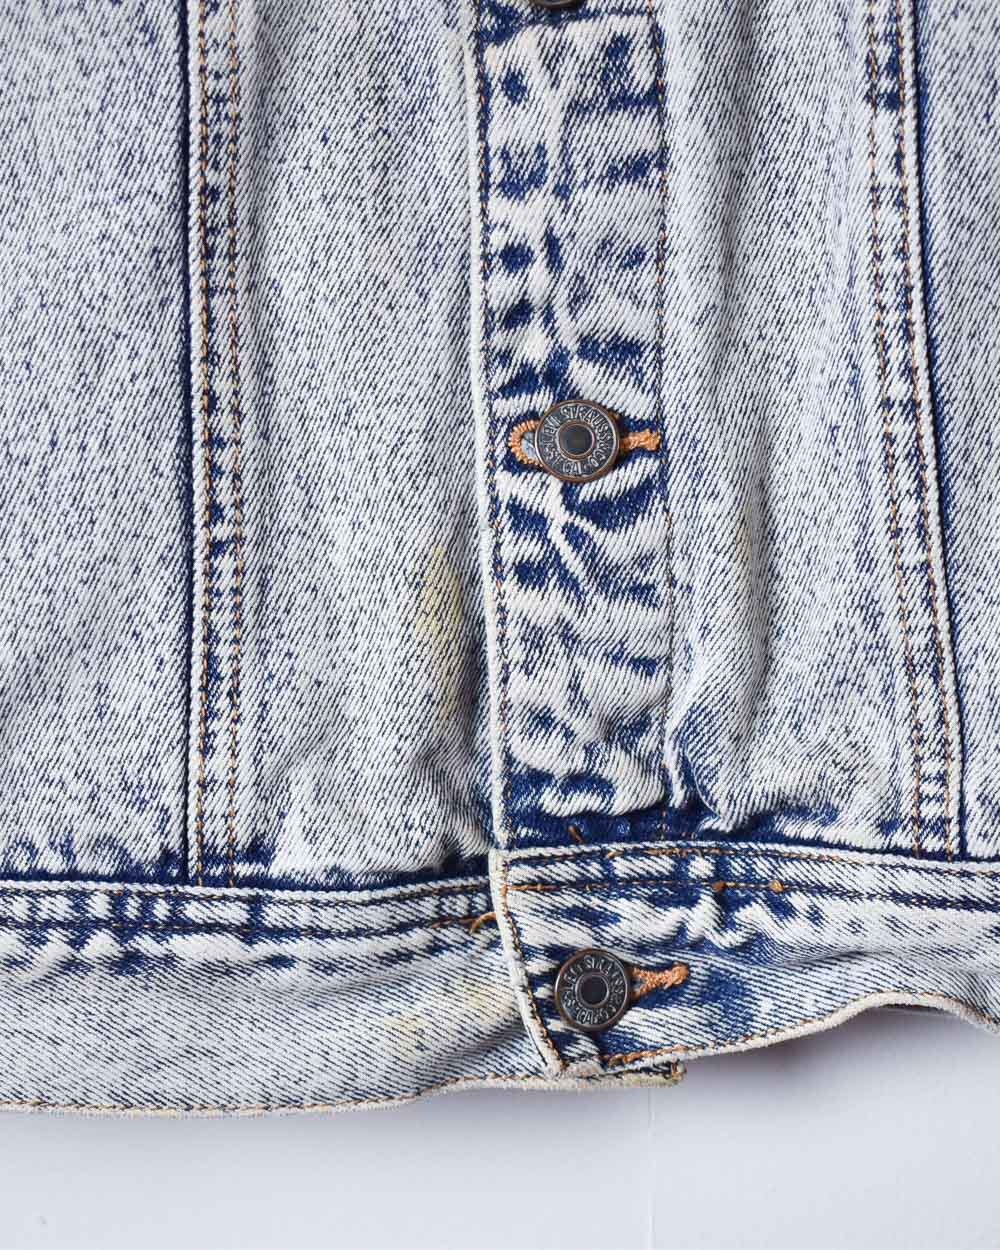 Blue Levi's Washed Denim Jacket - Medium Women's